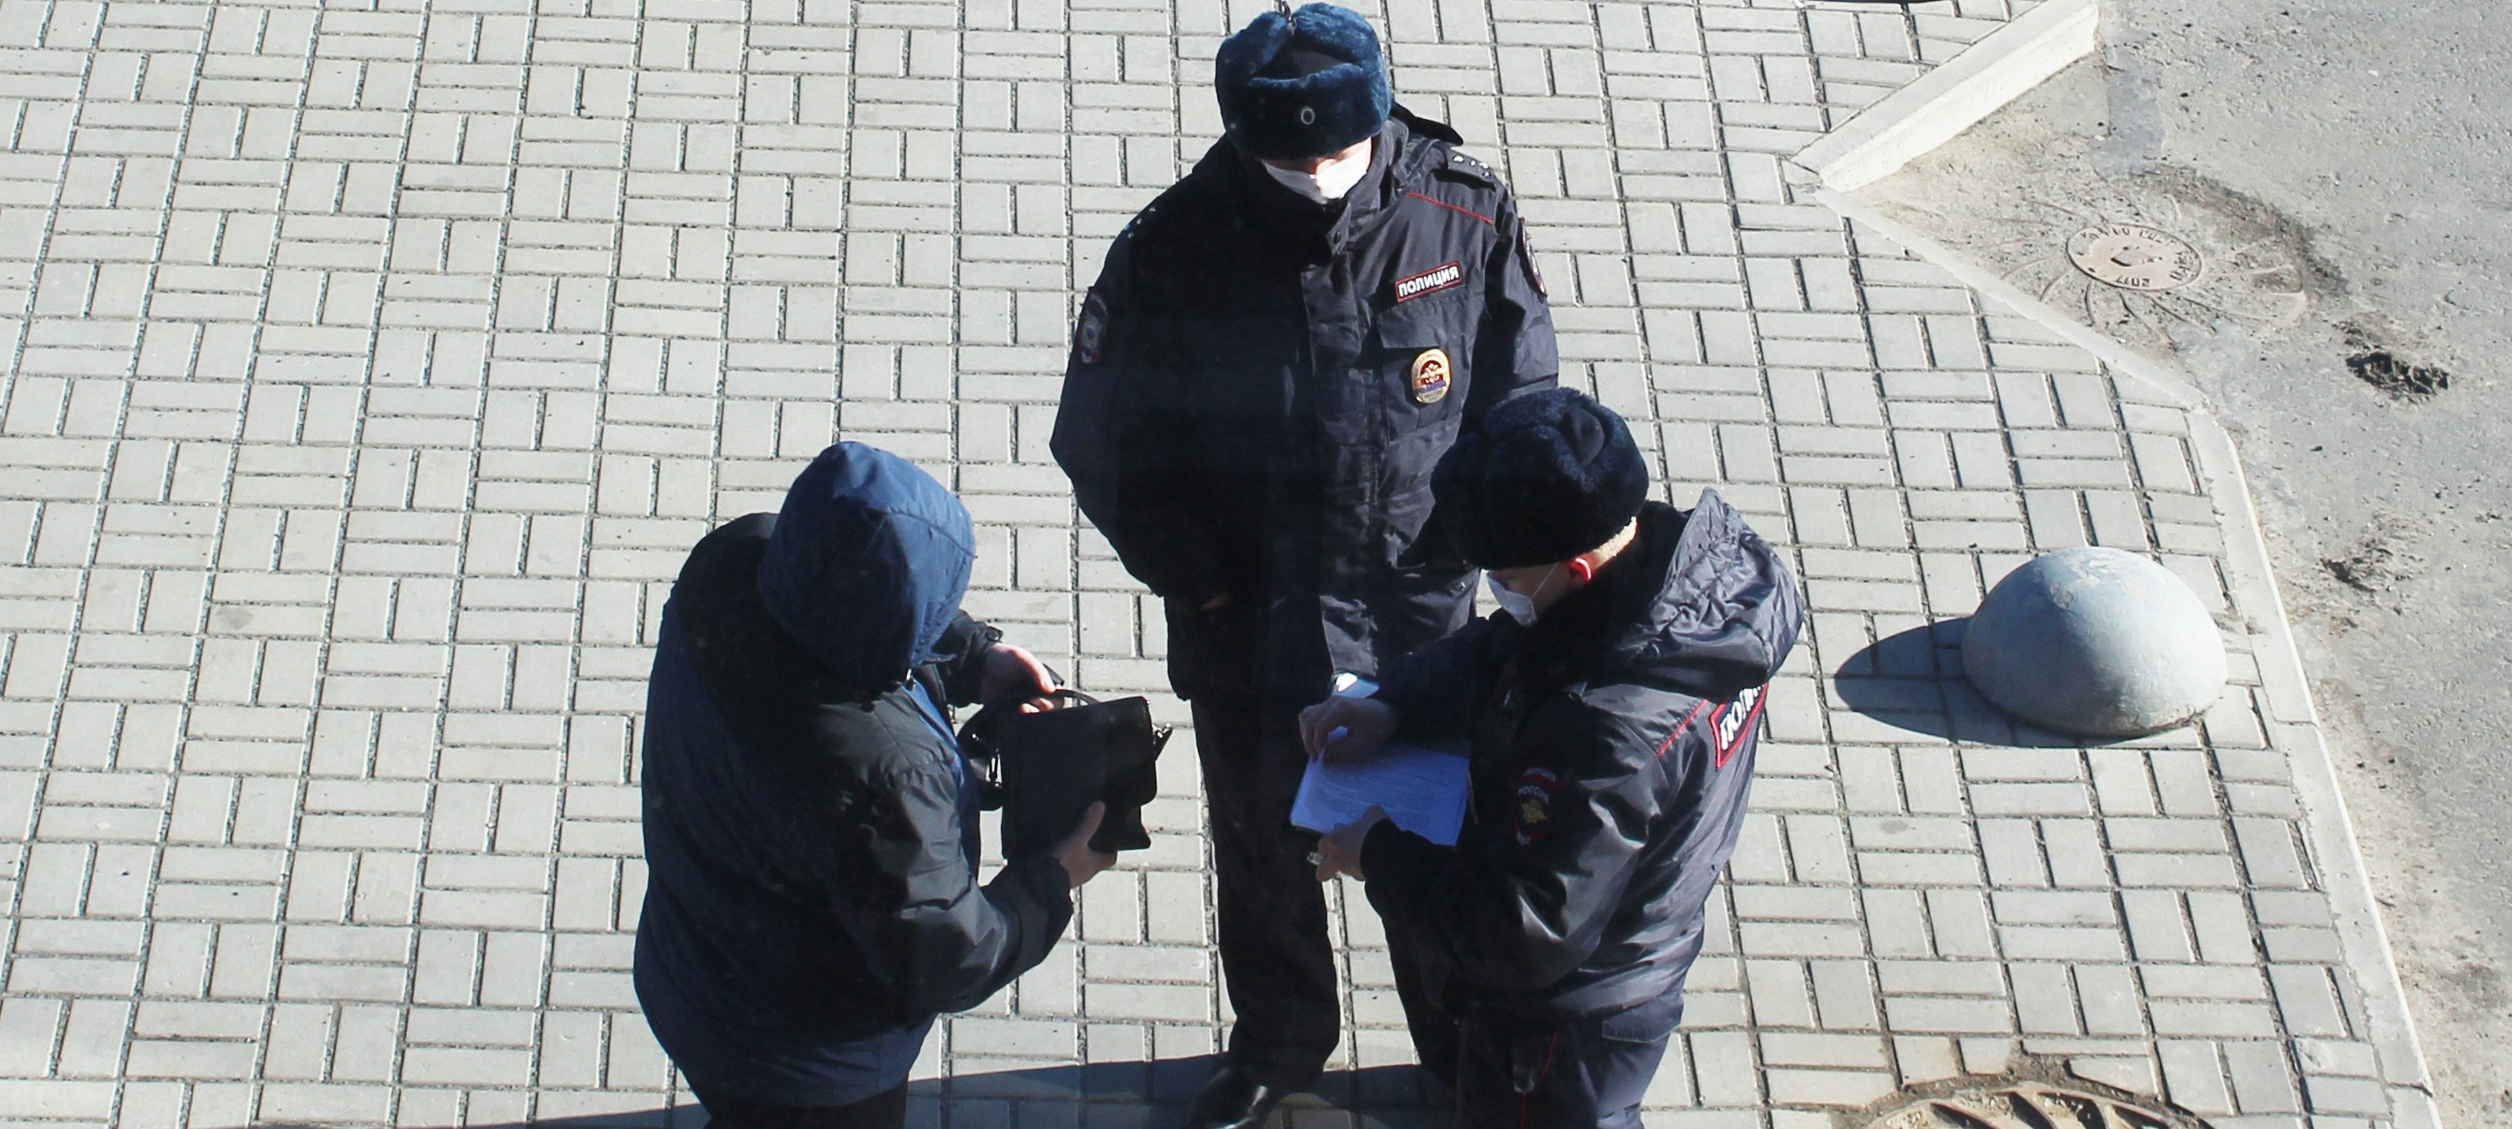 Жителей Карелии осудили за появление на публике без паспортов